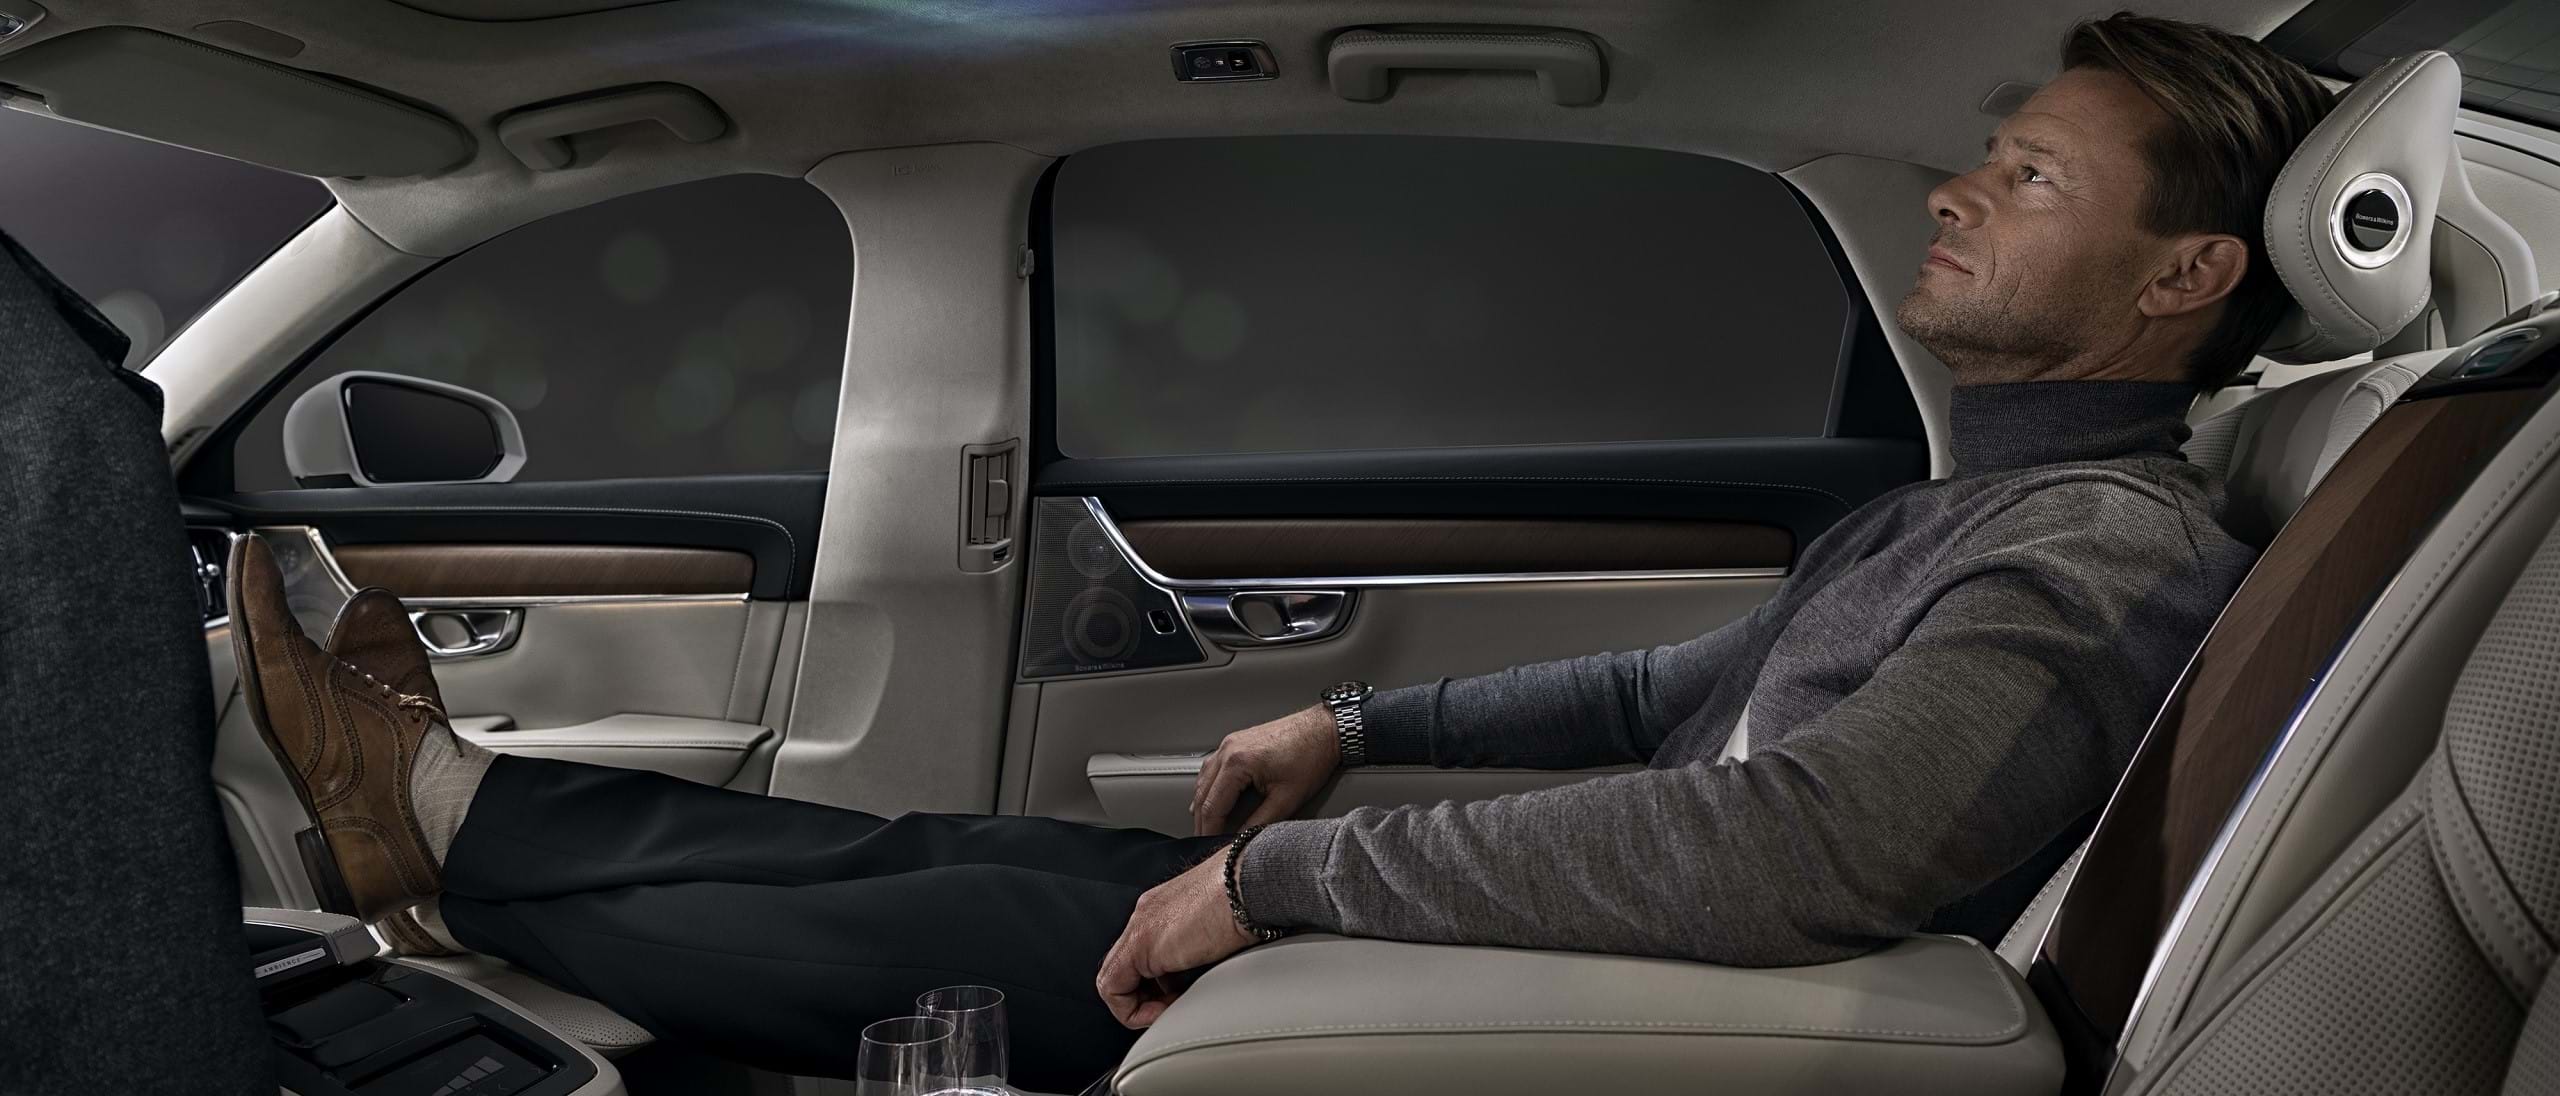 Un hombre reclinado en el asiento trasero de un Volvo, disfrutando del Ambiente Interior.